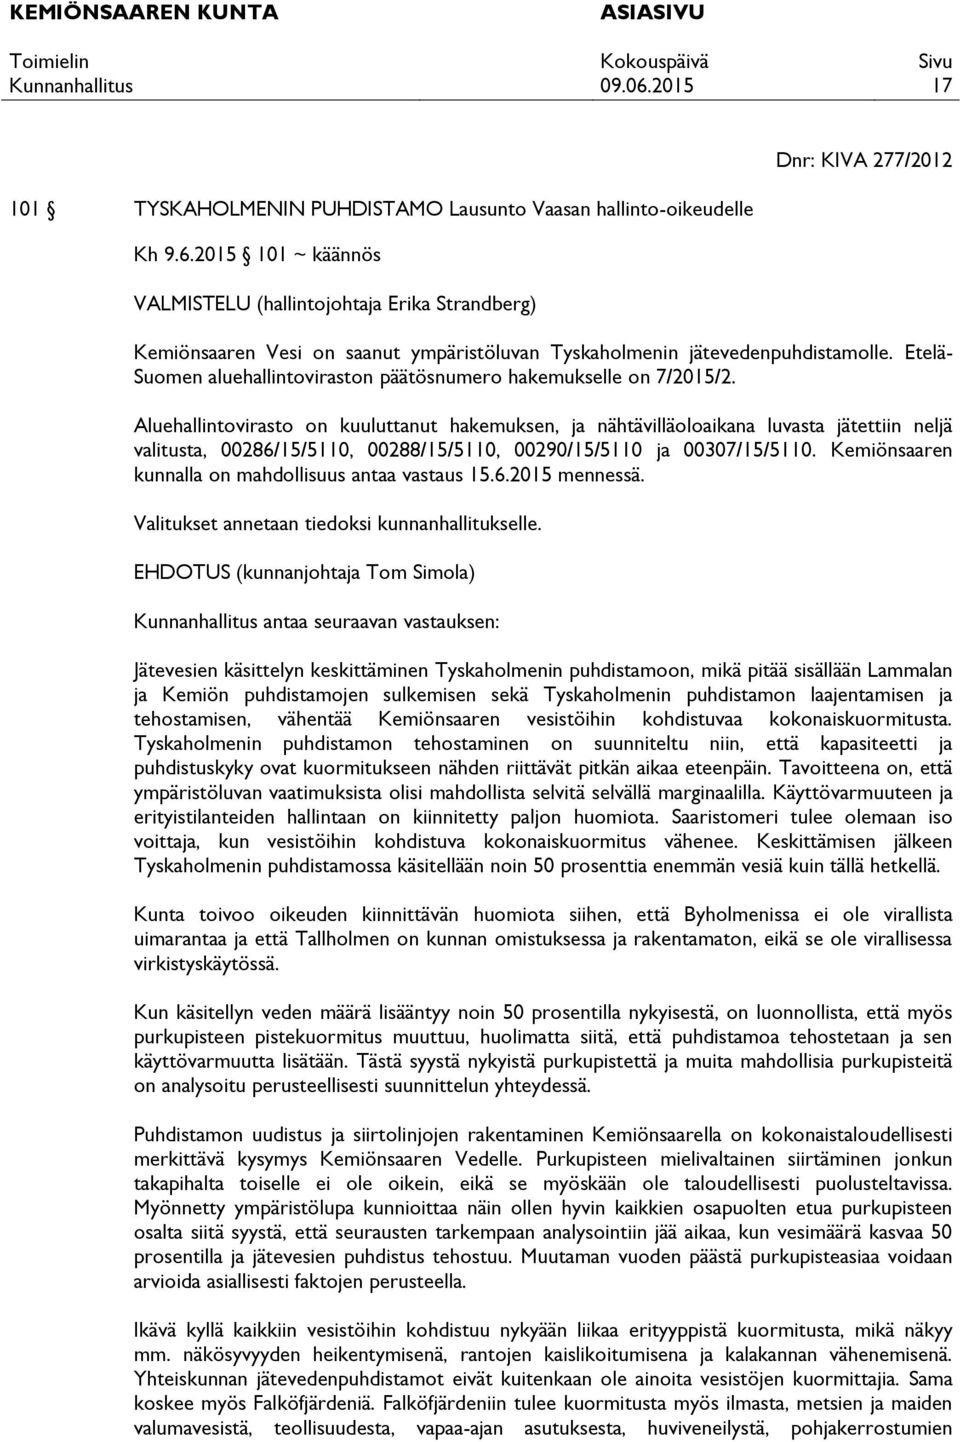 Etelä- Suomen aluehallintoviraston päätösnumero hakemukselle on 7/2015/2.